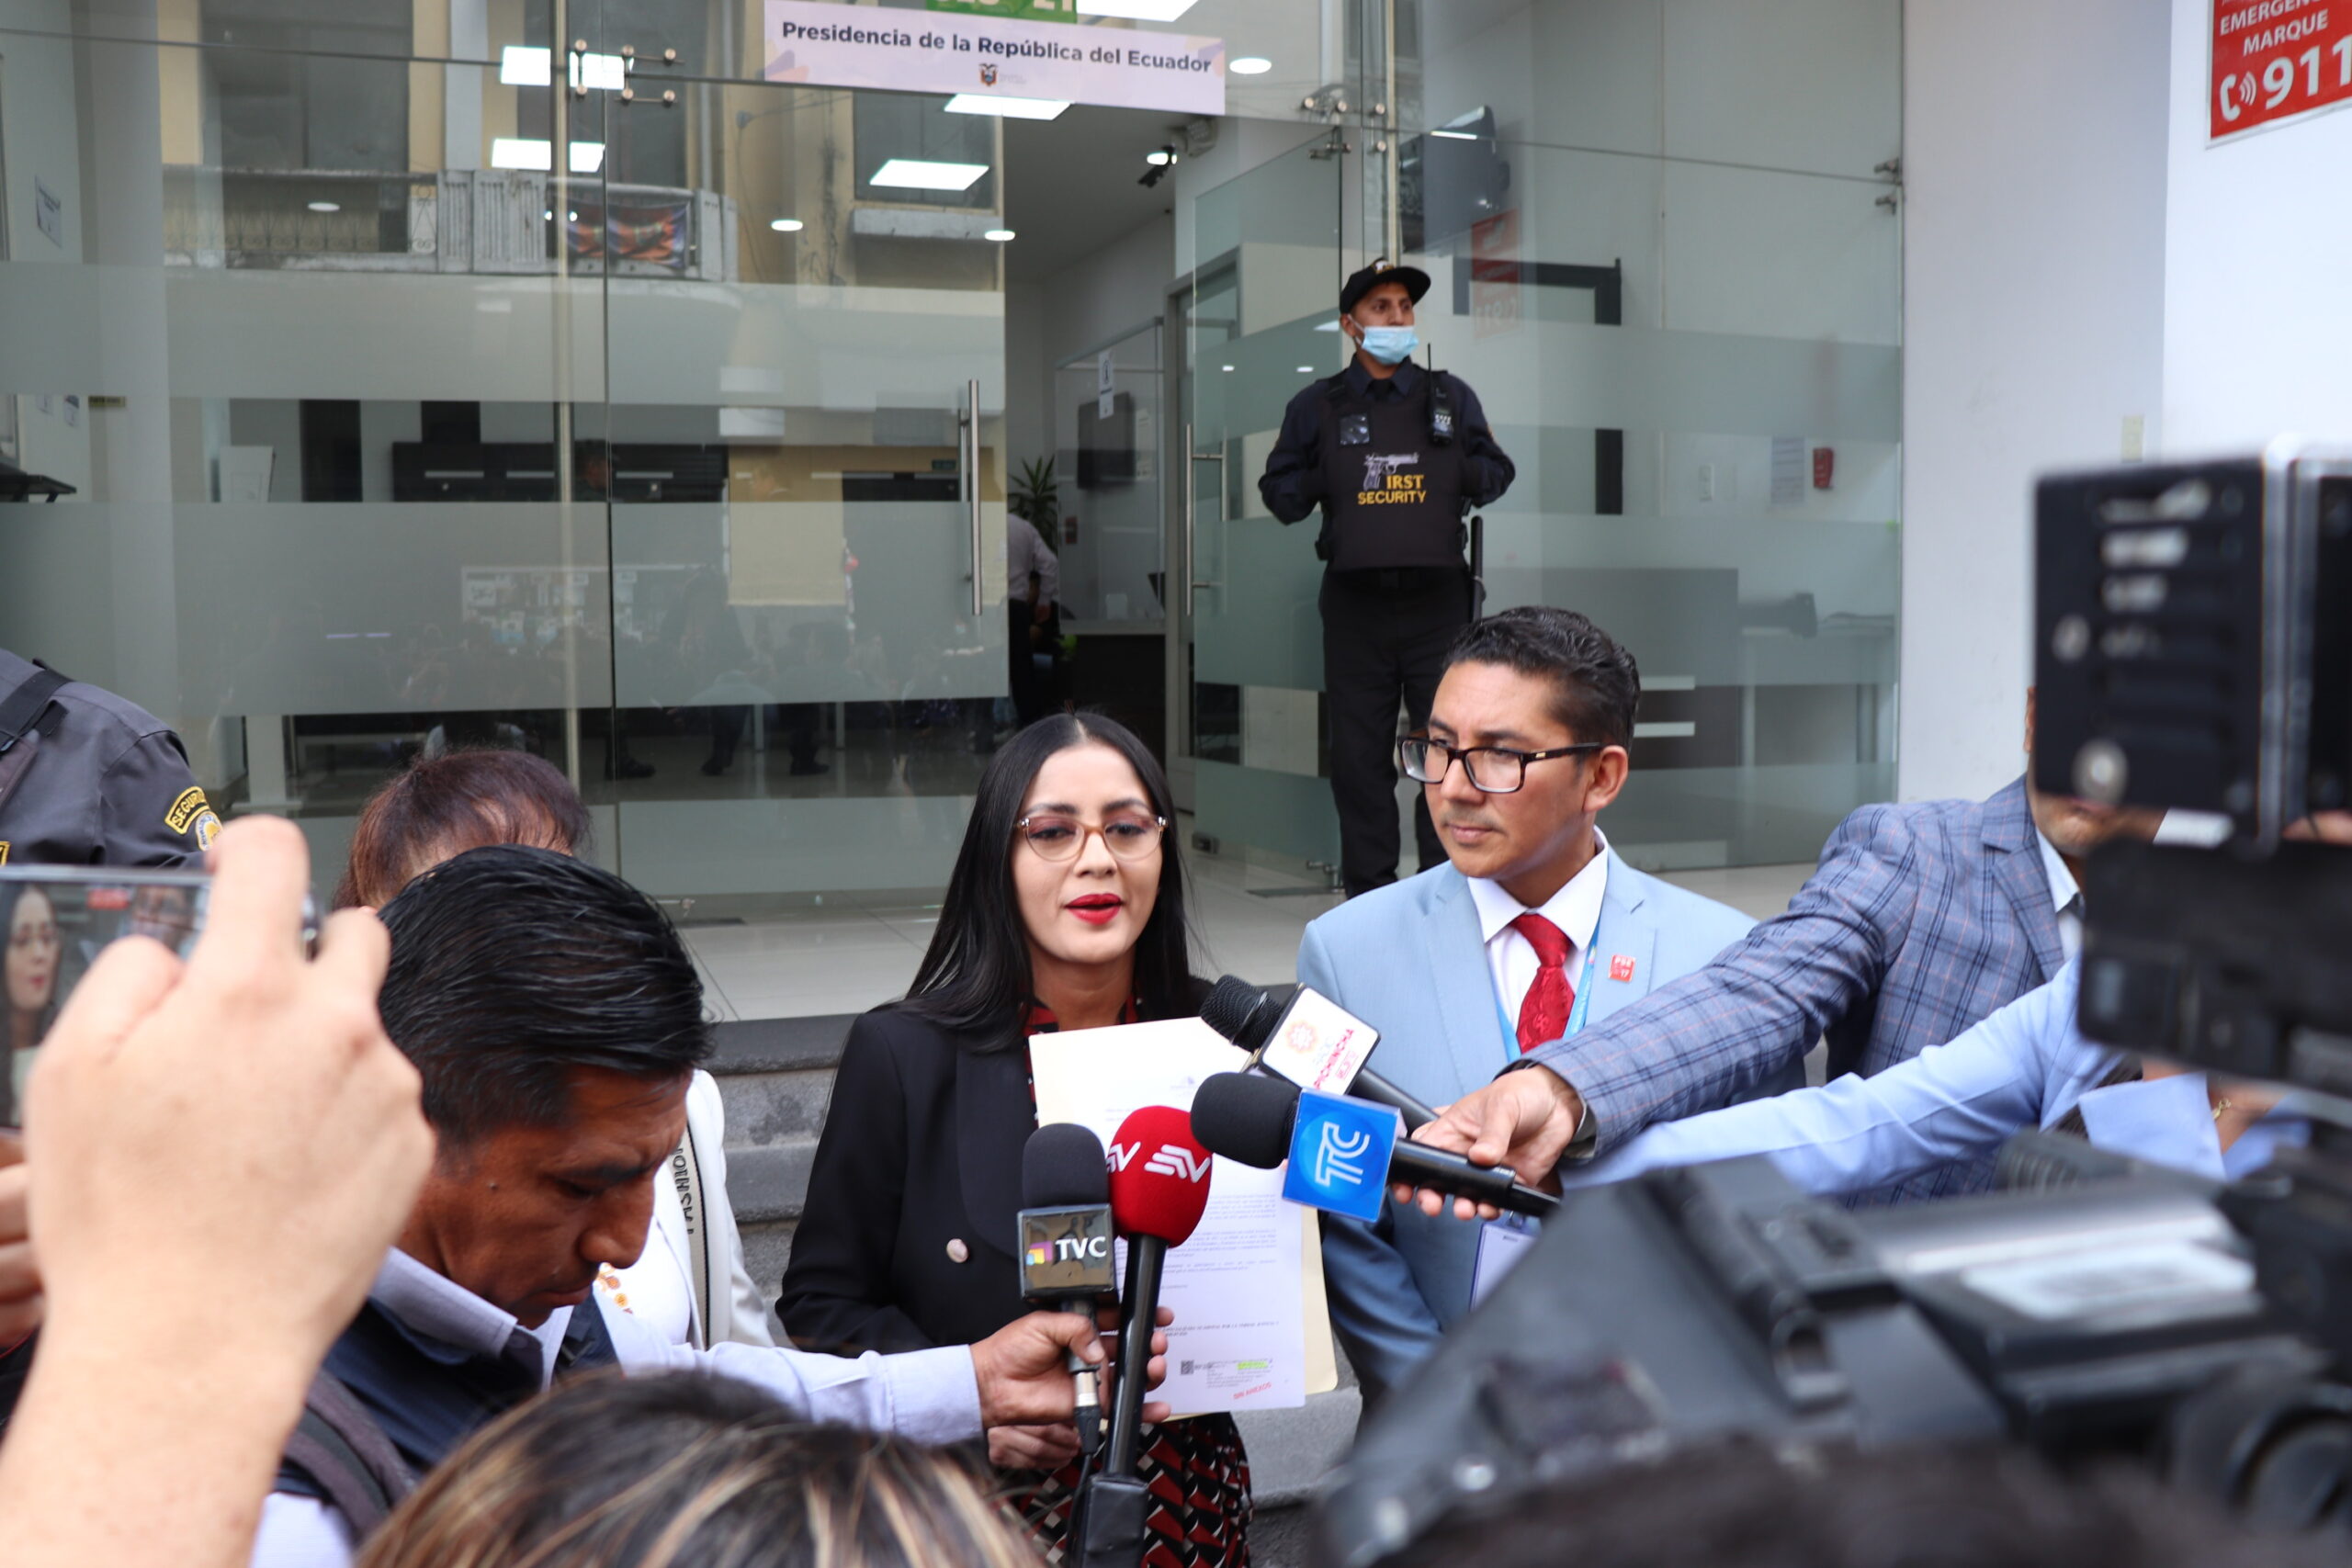 Los asambleístas Viviana Veloz y Diego Esparza acudieron al Palacio de Gobierno. Foto: @DiegoEsparza_17